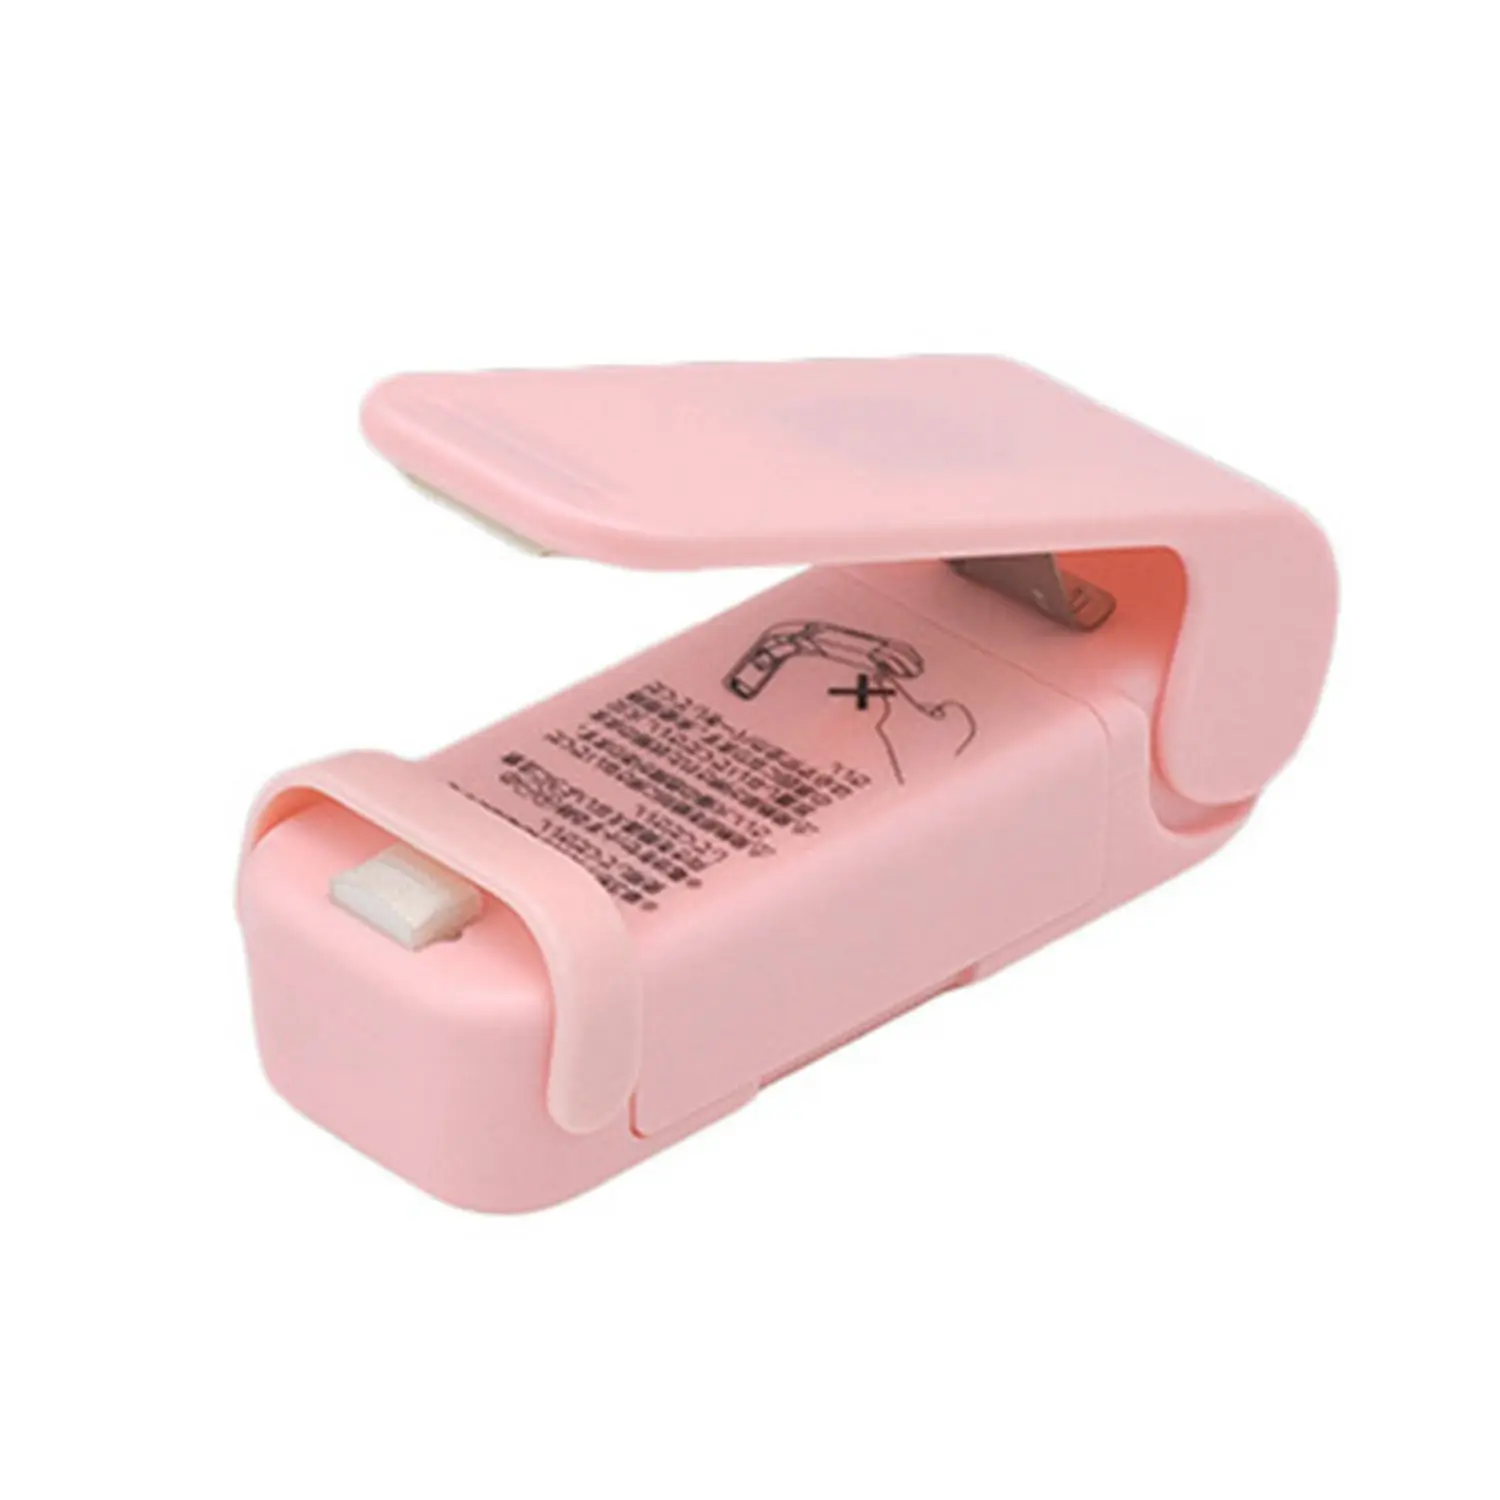 Горячие Зажимы Ручной мини электрический QuickDone вакуумный упаковщик пищевых продуктов пластиковый пакет тепло запечатывания закуски упаковщик машина - Цвет: Pink